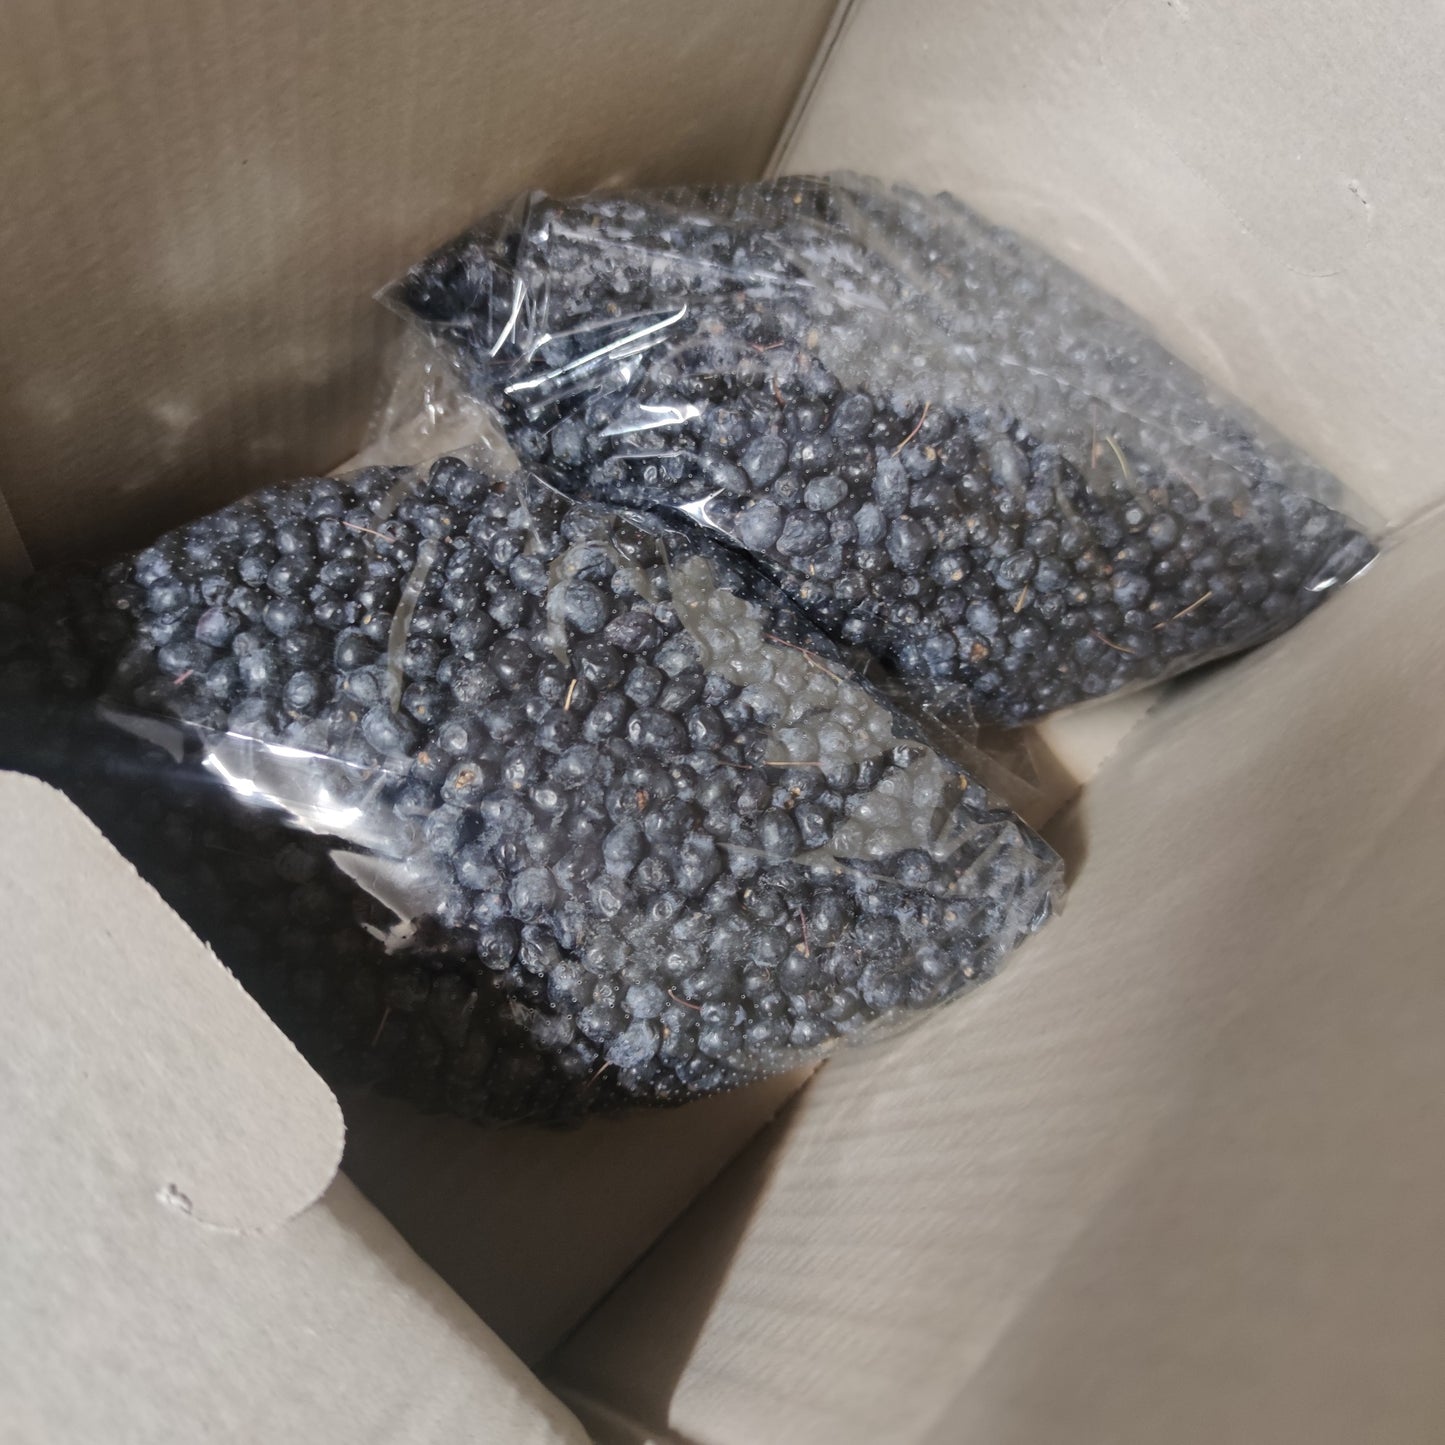 Fresh Sardinian black myrtle berries (myrtus communis) in food packaging [ PREORDER ]